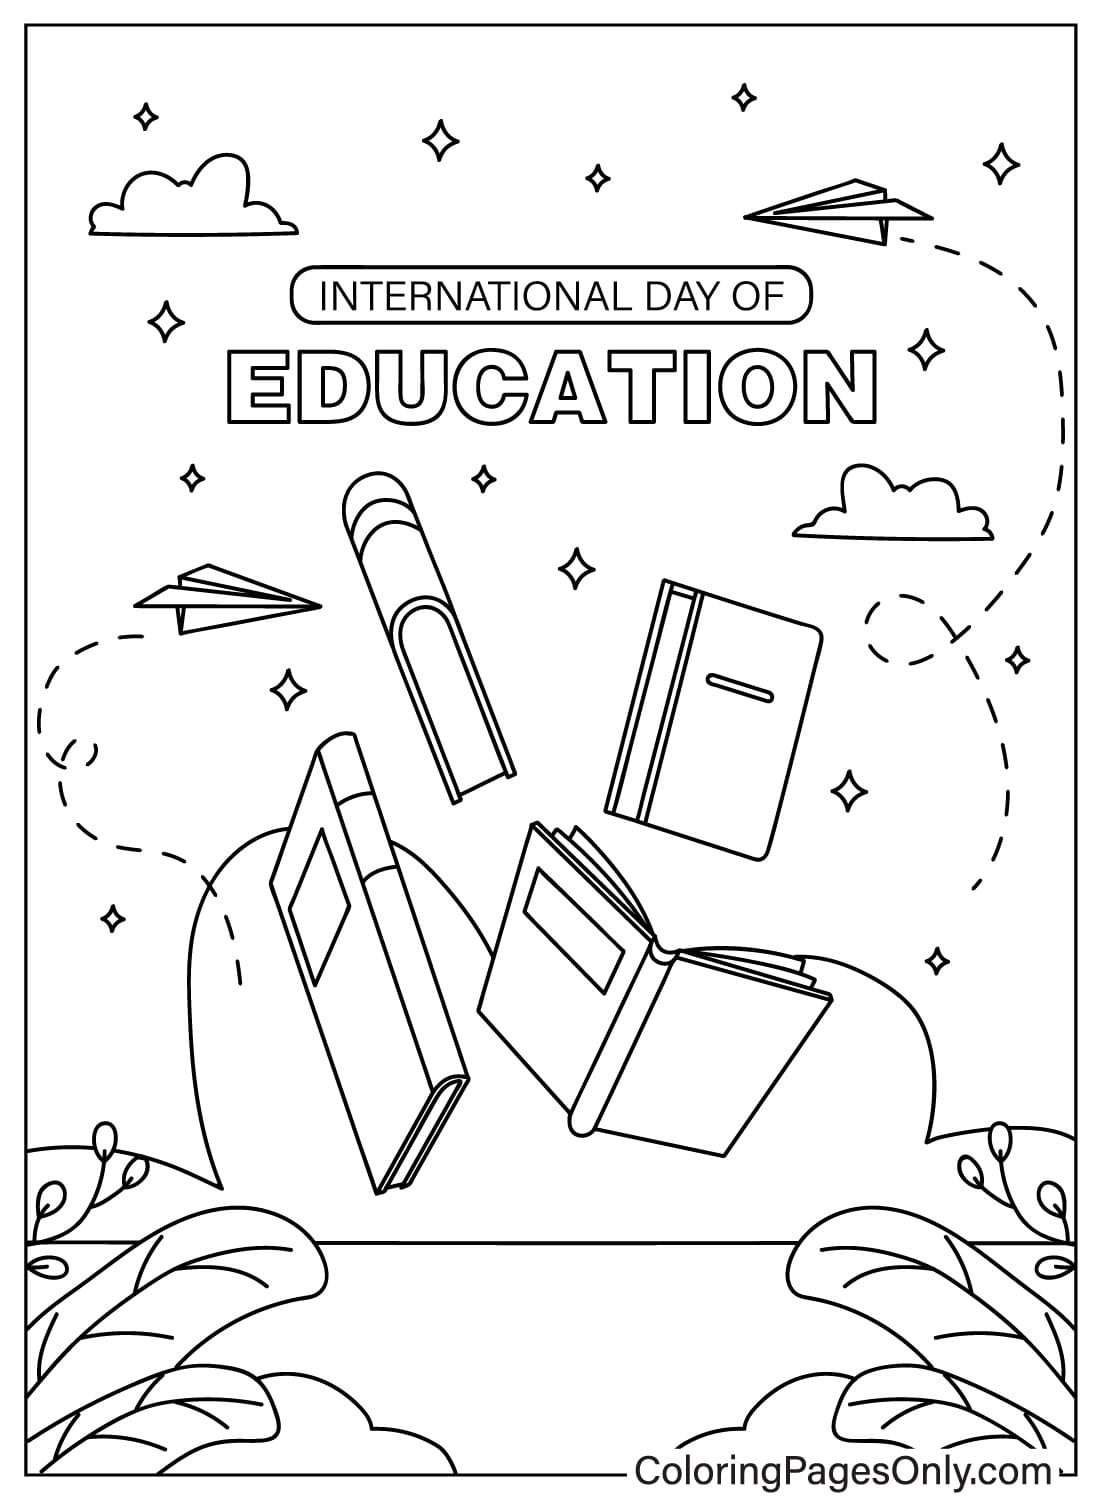 اليوم العالمي لتعليم التلوين من اليوم العالمي للتعليم